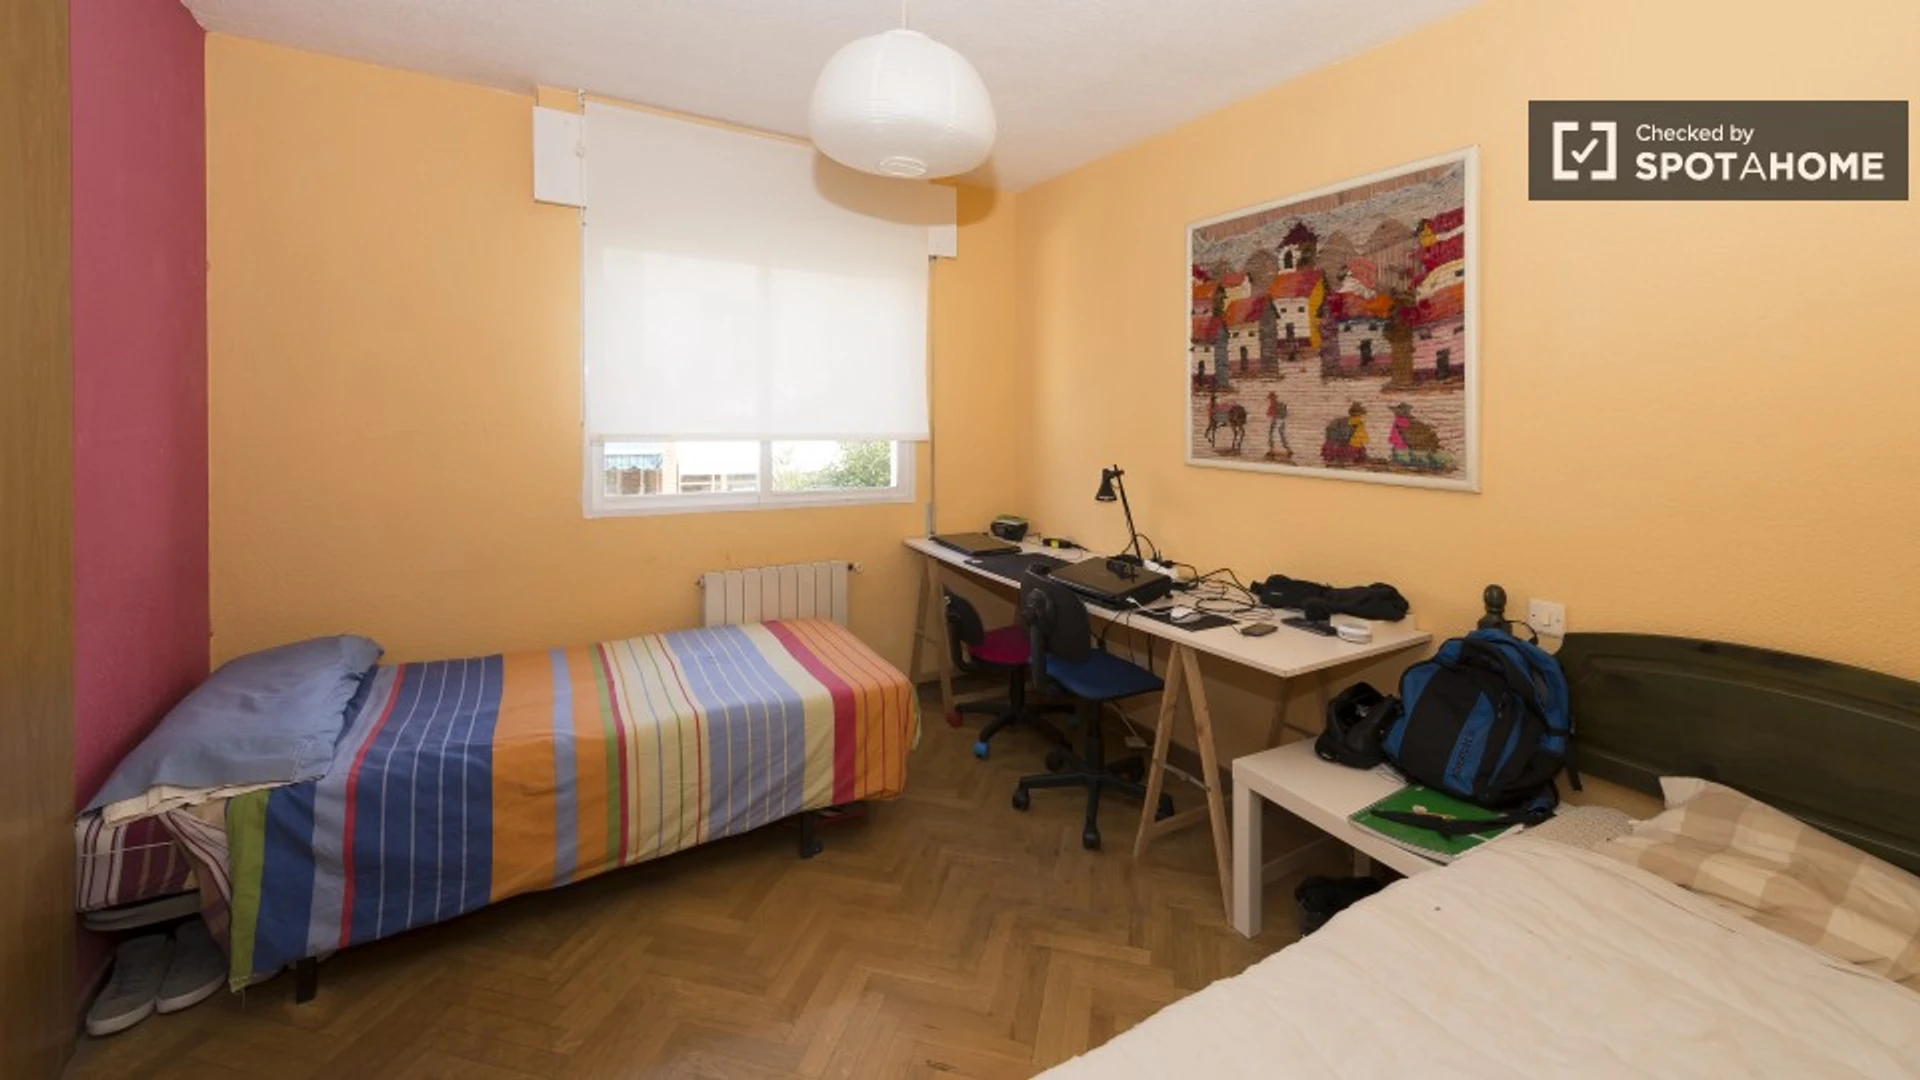 Alquiler de habitación en piso compartido en Villaviciosa De Odón